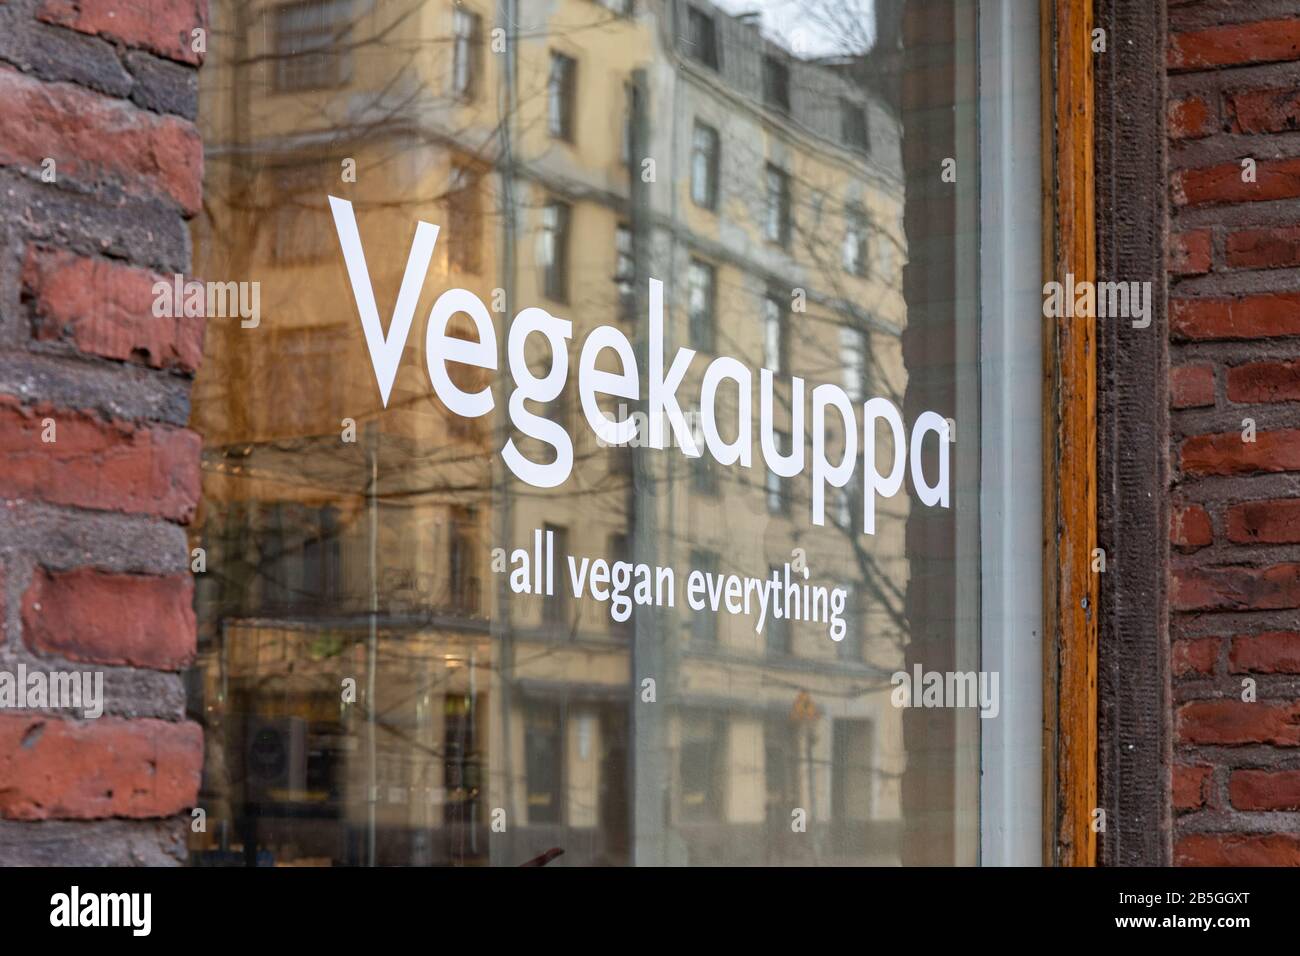 Vegekauppa, vente de tous les produits végétaliens, vitrine de magasin sur Helsinginkatu dans le district de Kallio à Helsinki, Finlande Banque D'Images